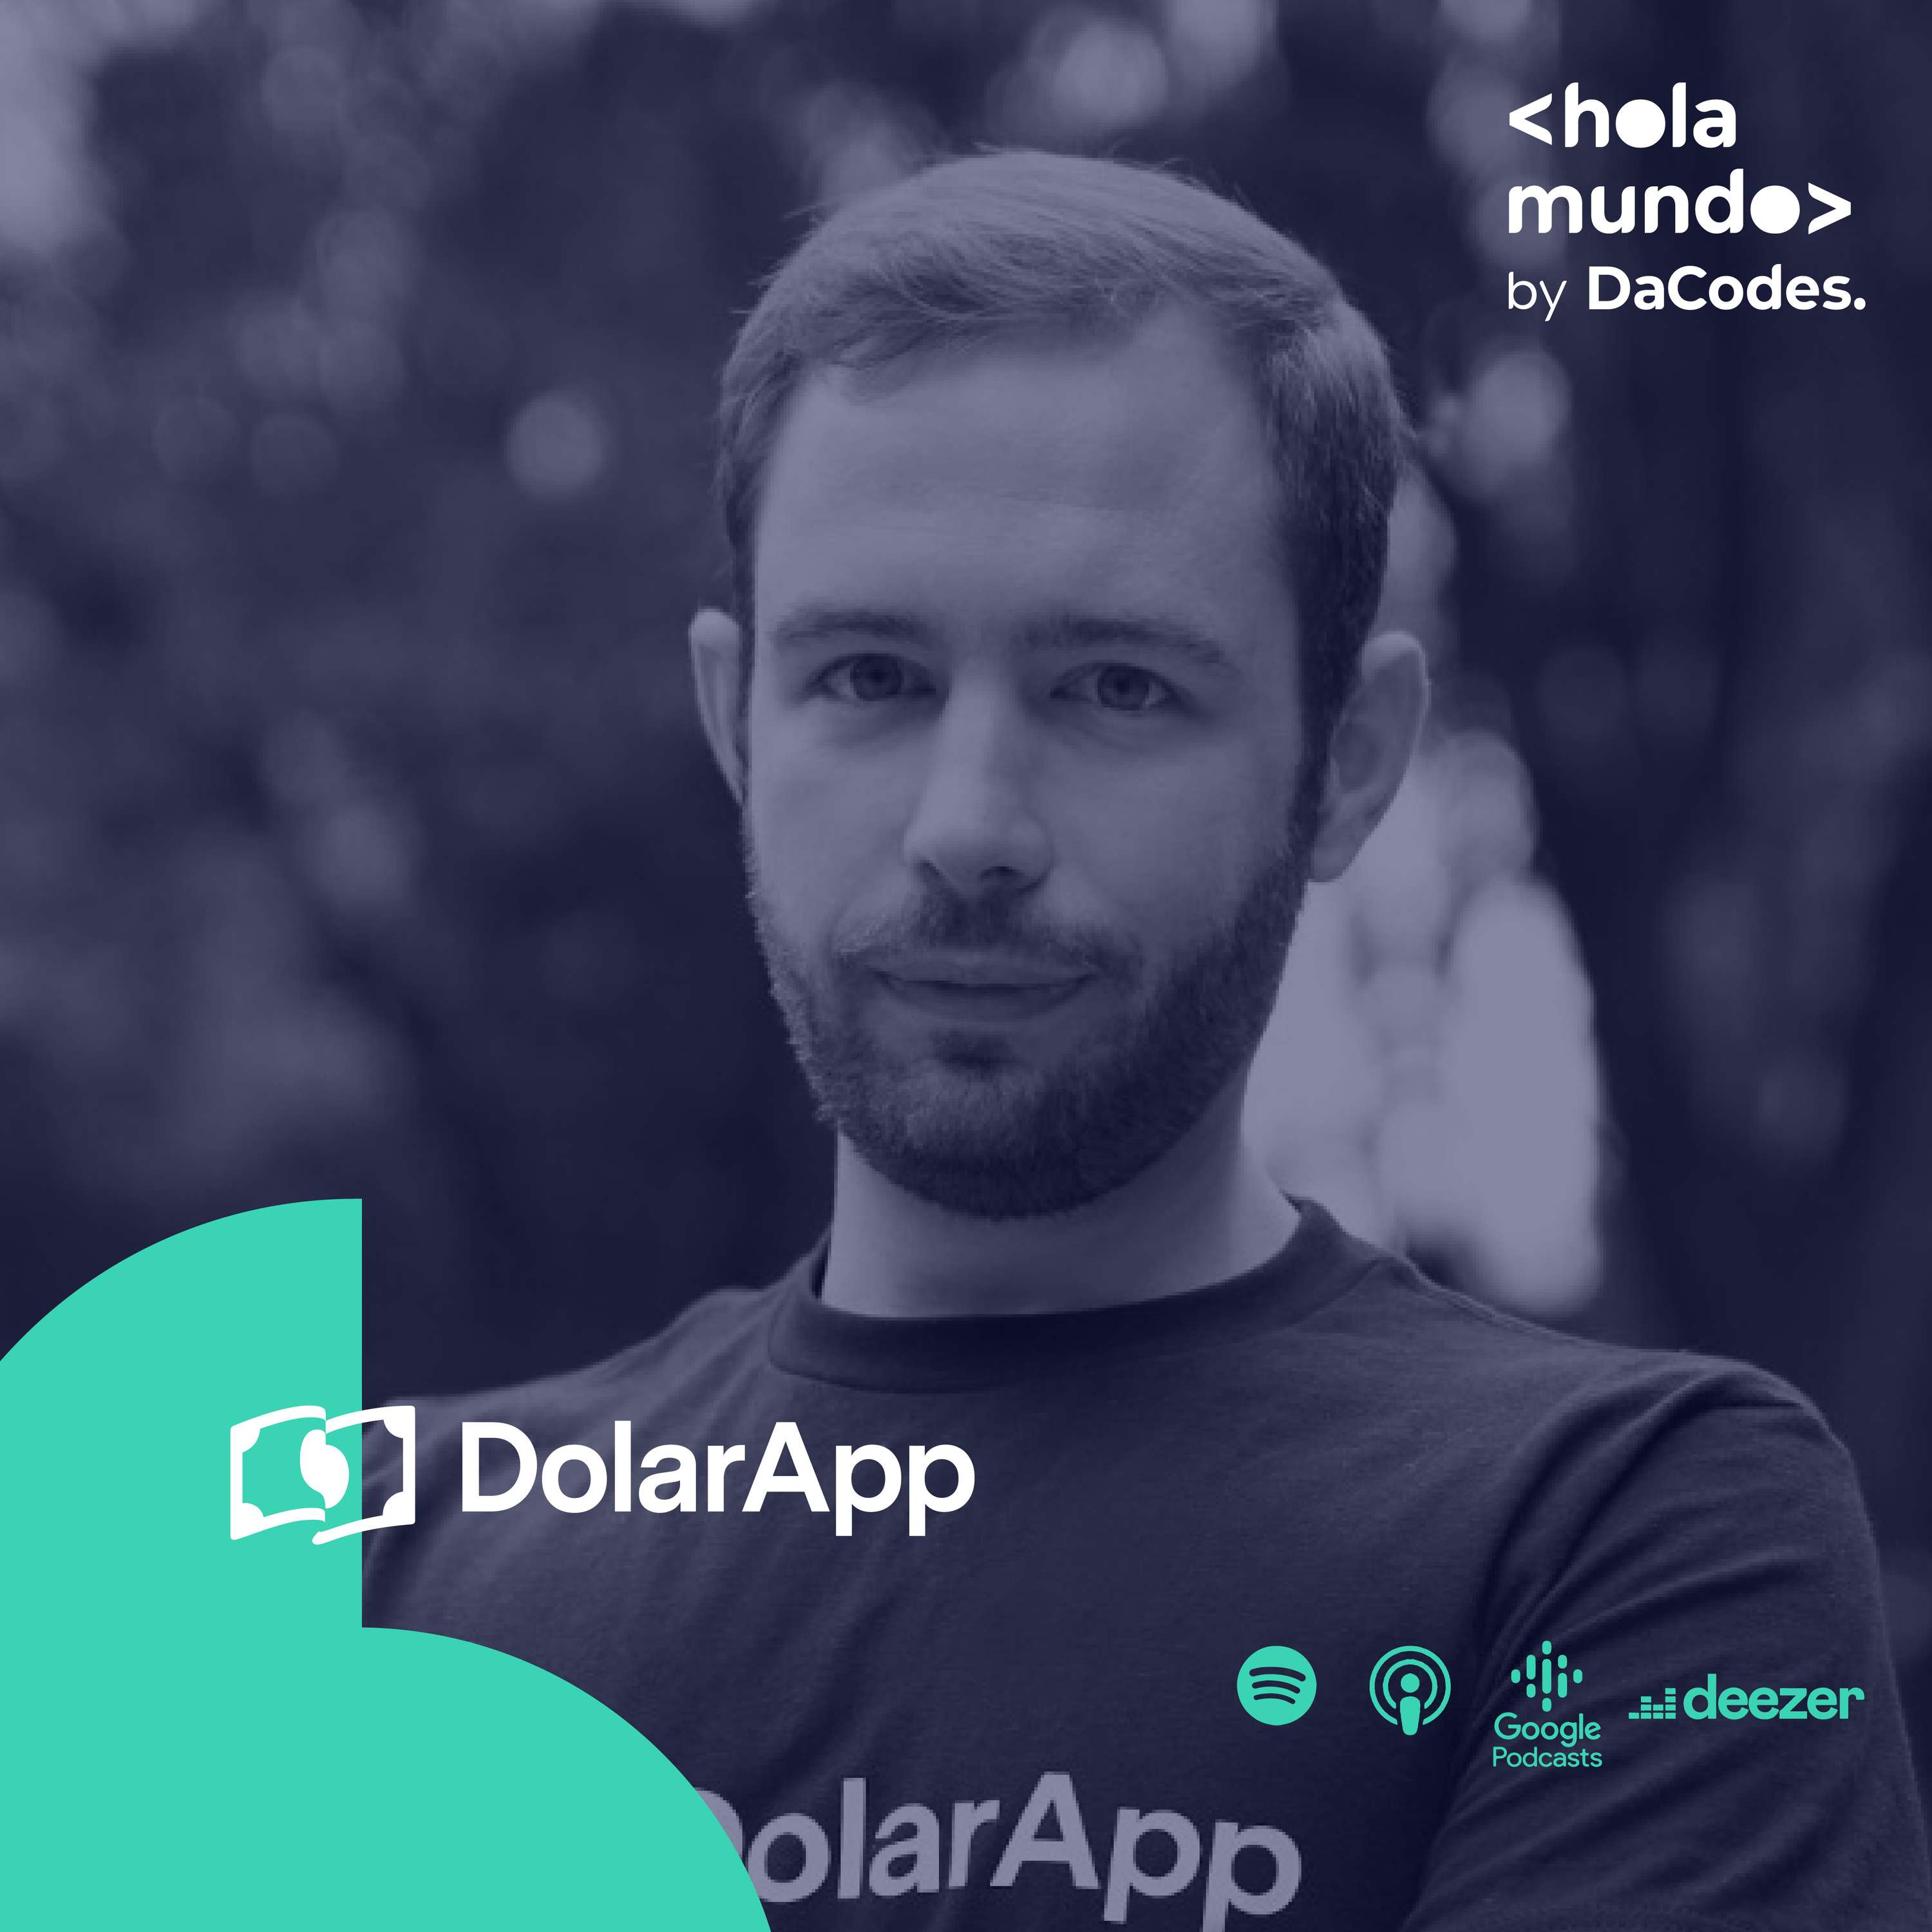 Hola Mundo 23 con Fernando Terrés de Dollarapp: Innovación financiera,  importancia del blockchain y la fintech que resolvió el globalizar las finanzas con USDc.